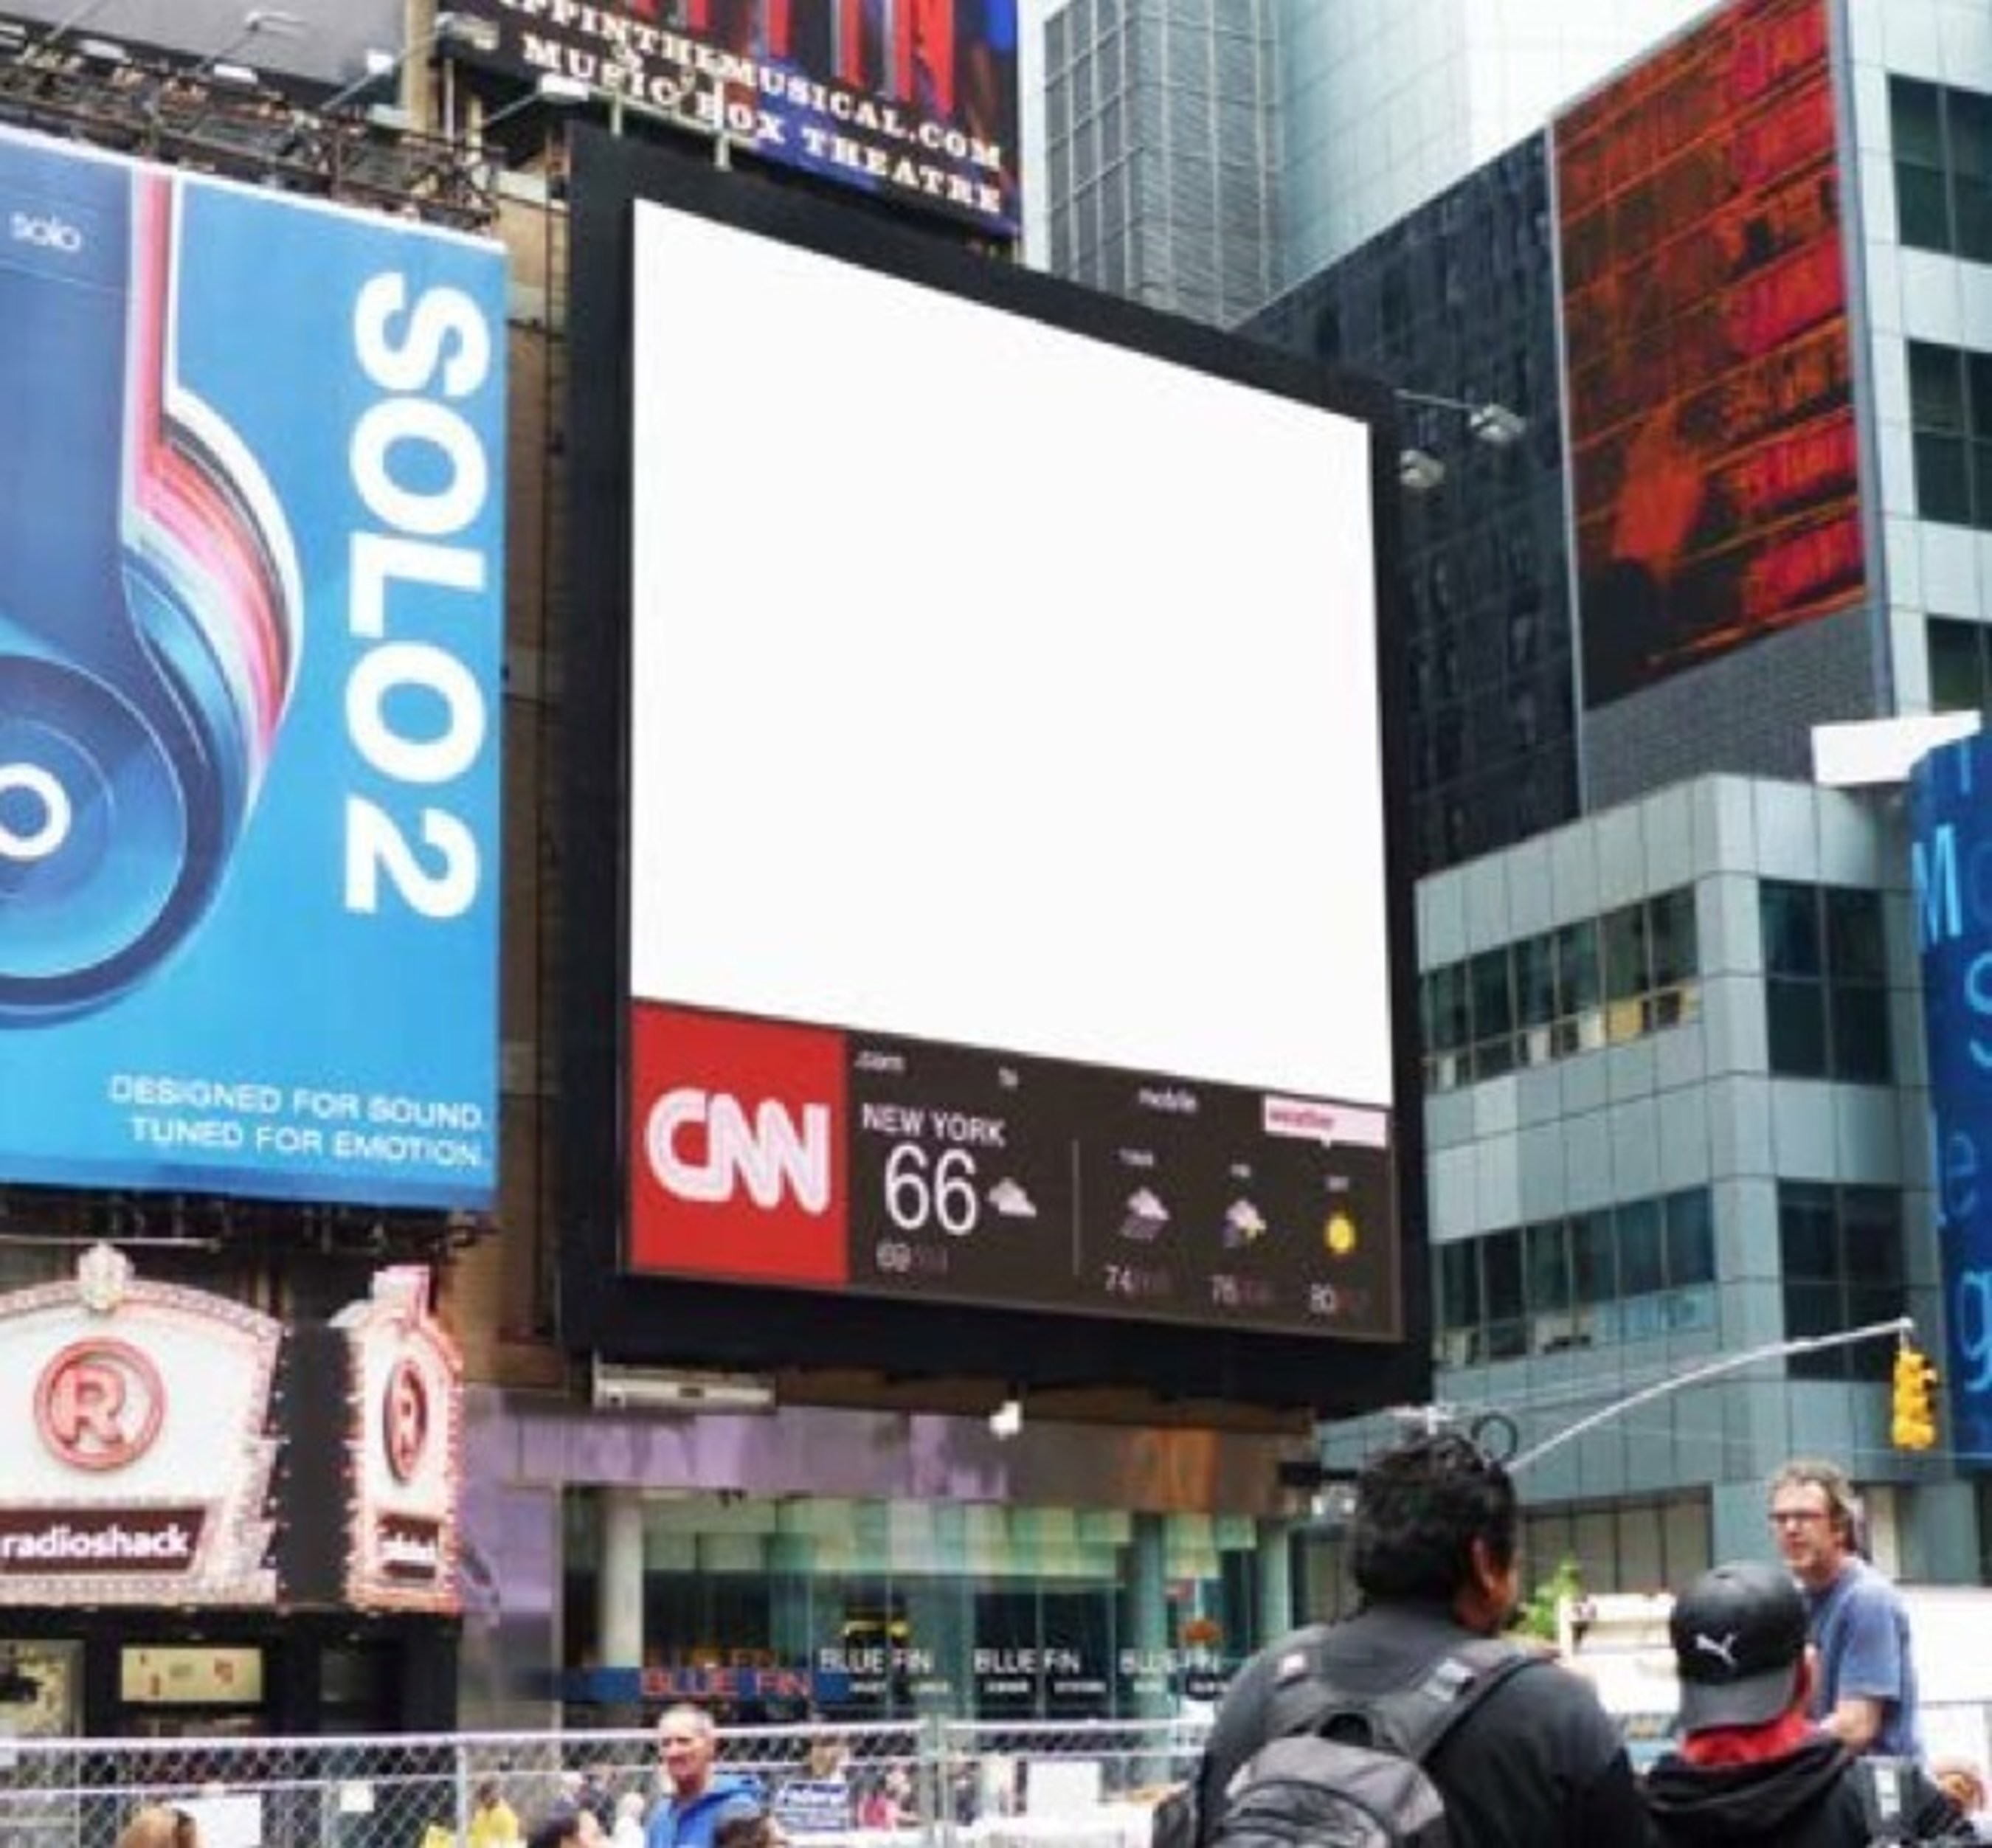 Times Square Million Dollar Billboard Campaign